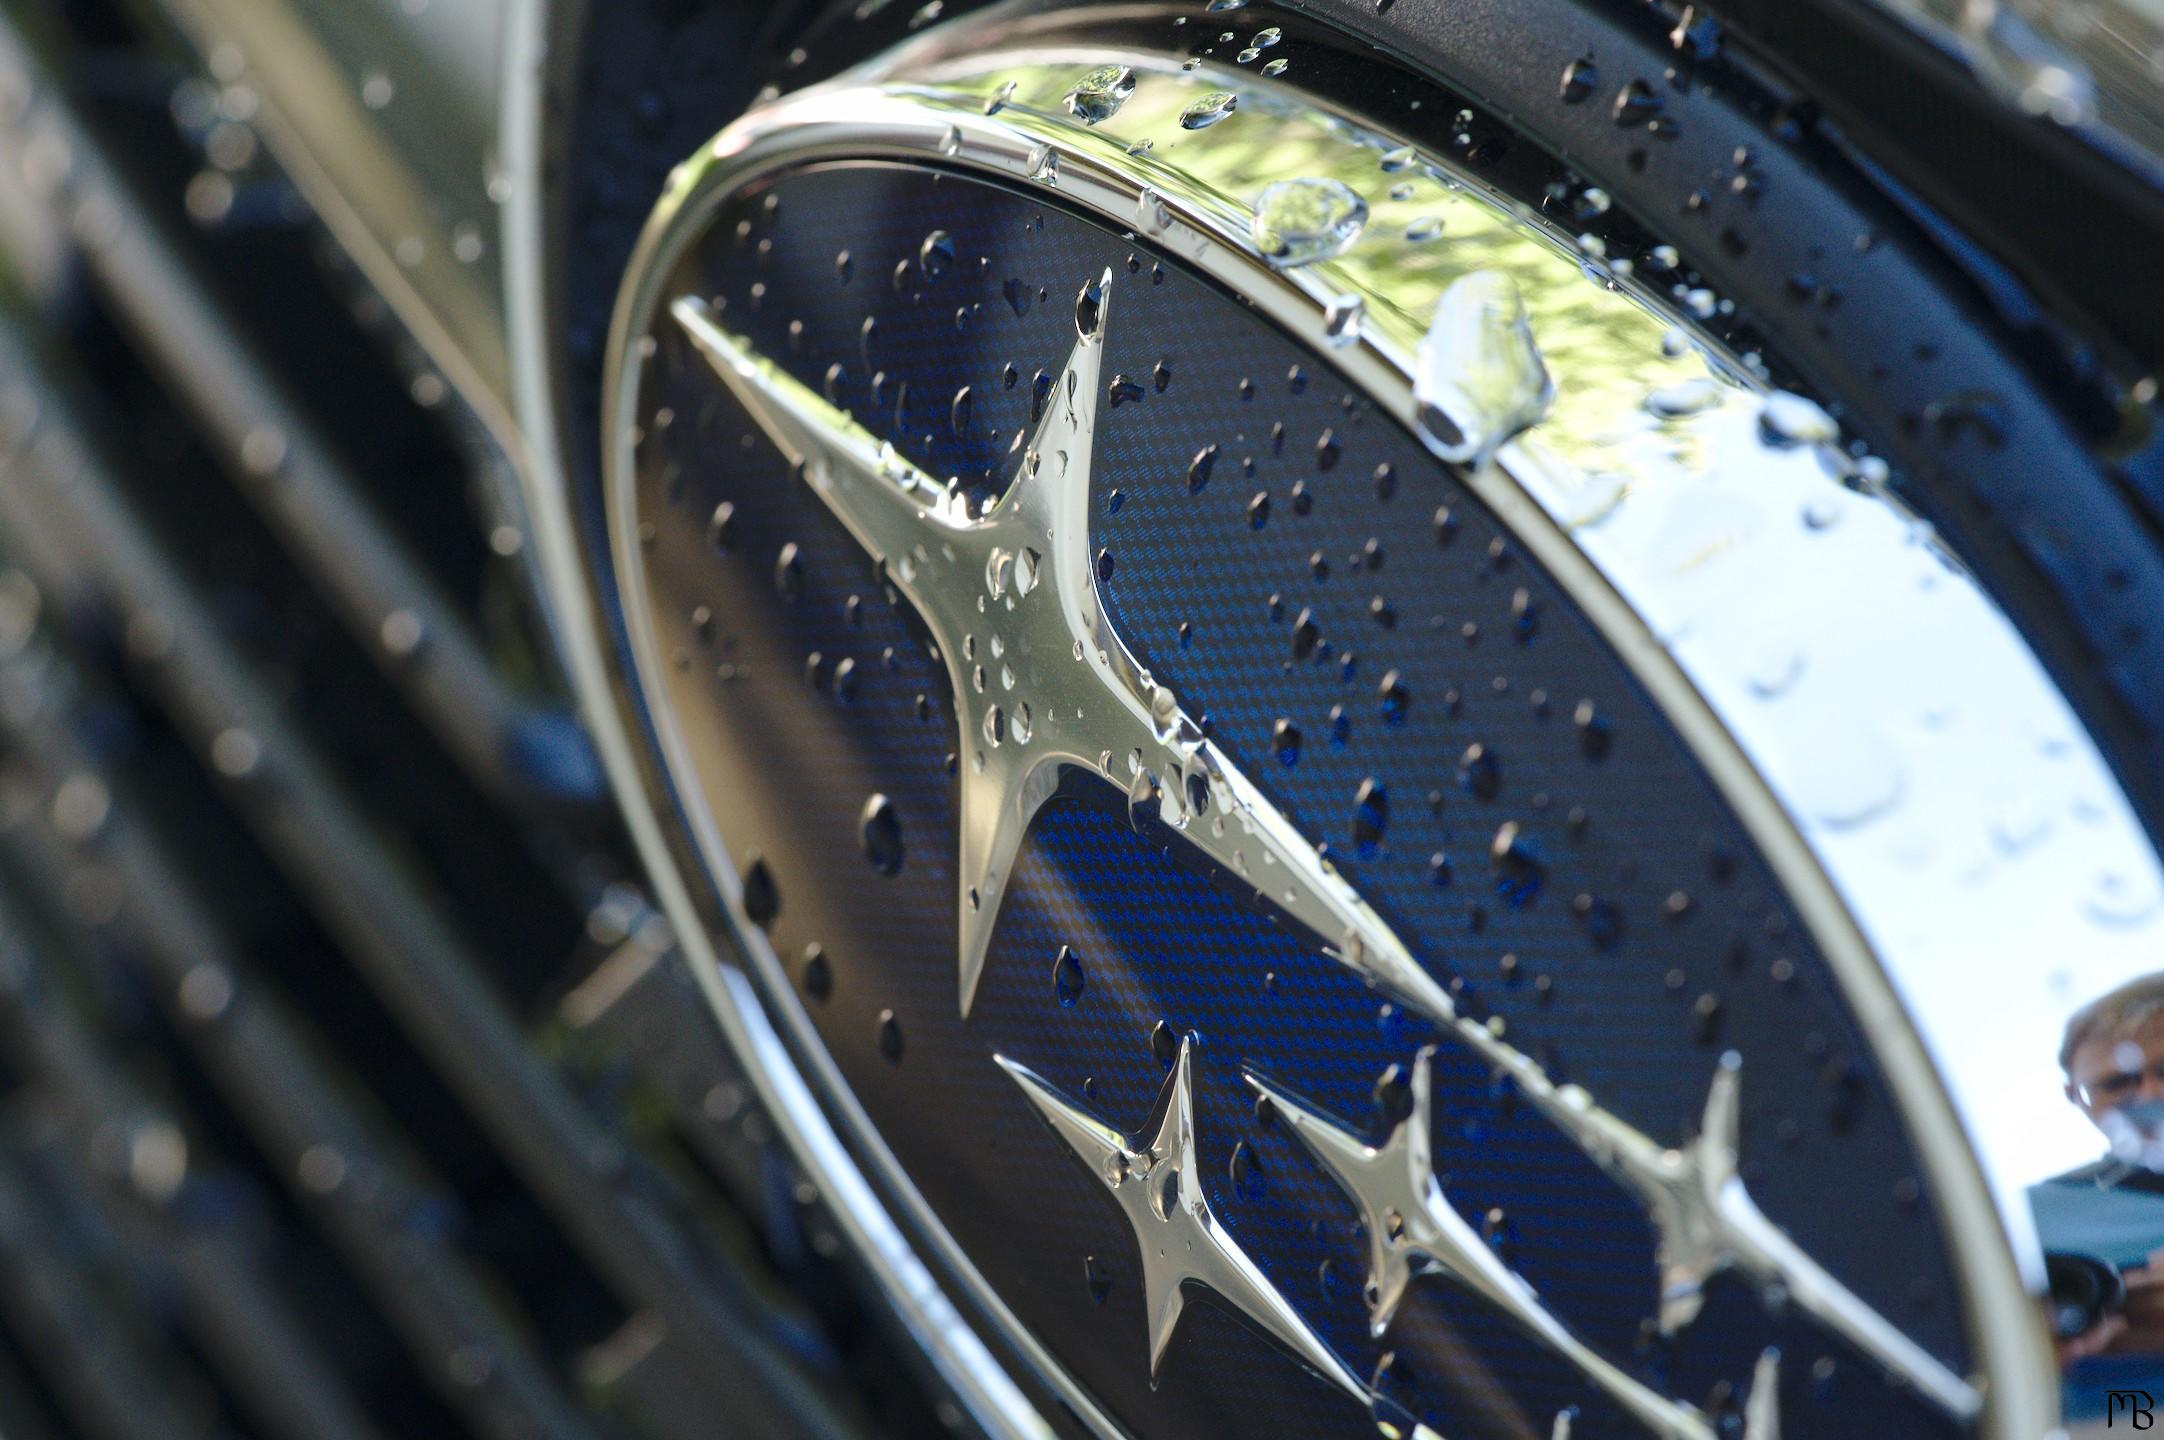 Subaru logo with water drops (not a sponsor)